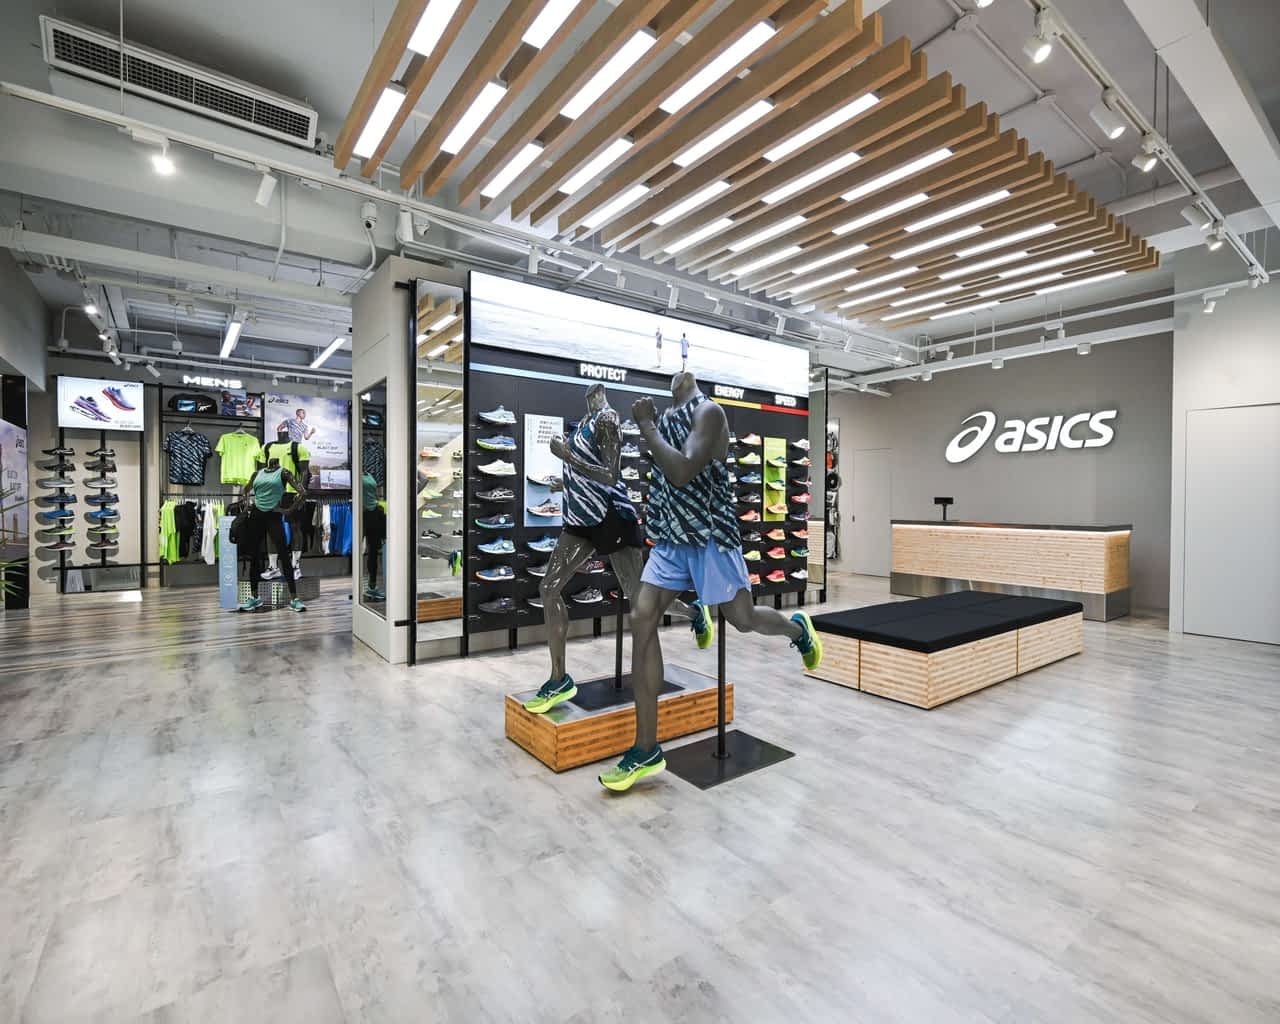 【品牌动态】ASICS 台北旗舰店崭新 All Sports 零售概念   林敬伦化身一日店员